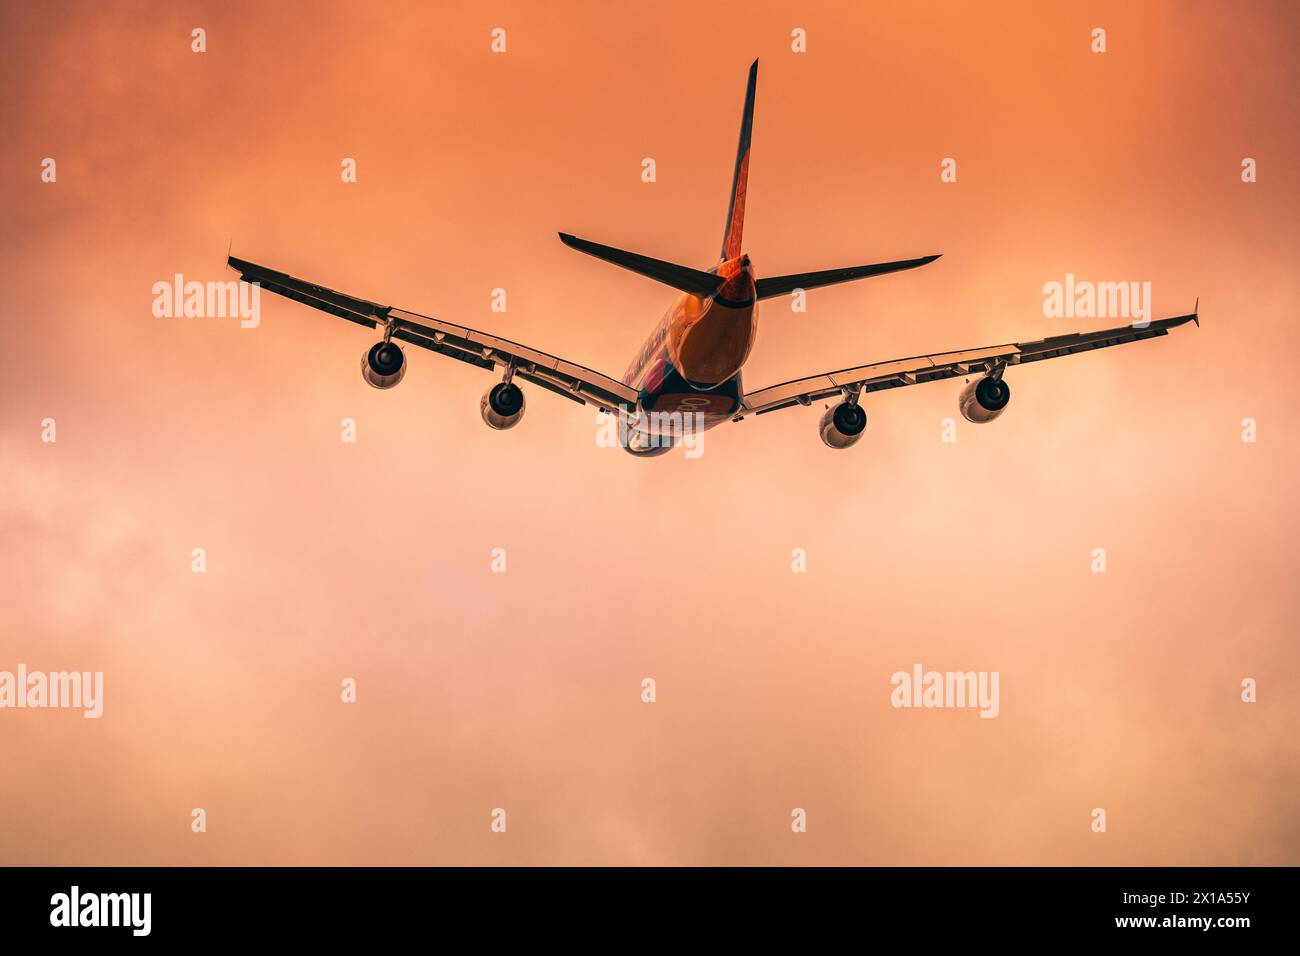 Départ d'un avion a380 d'un aéroport pendant un coucher de soleil/lever de soleil. Banque D'Images